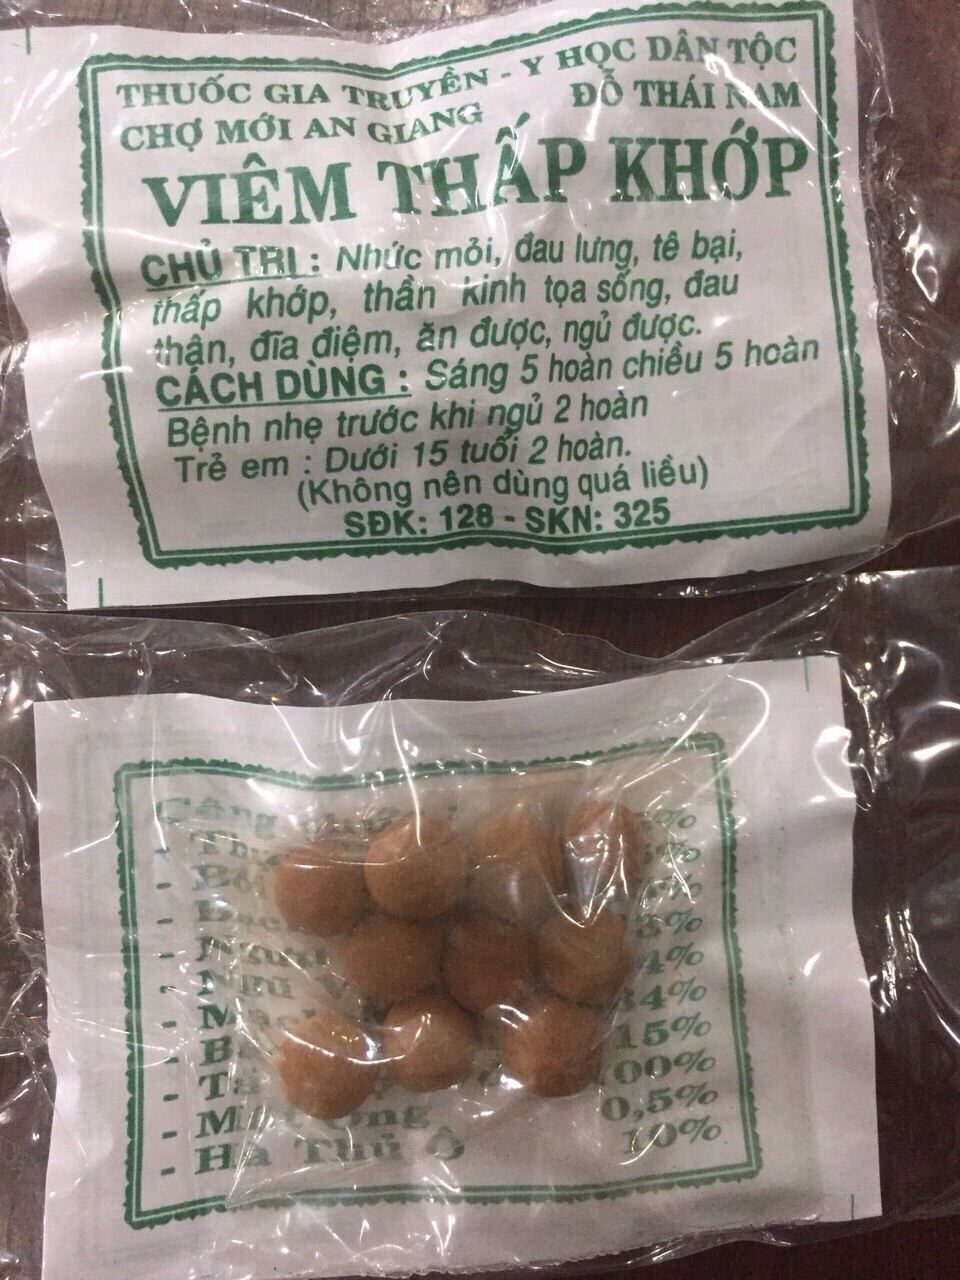 [HCM]50 gói viêm khớp Đỗ Thái Nam nhập khẩu